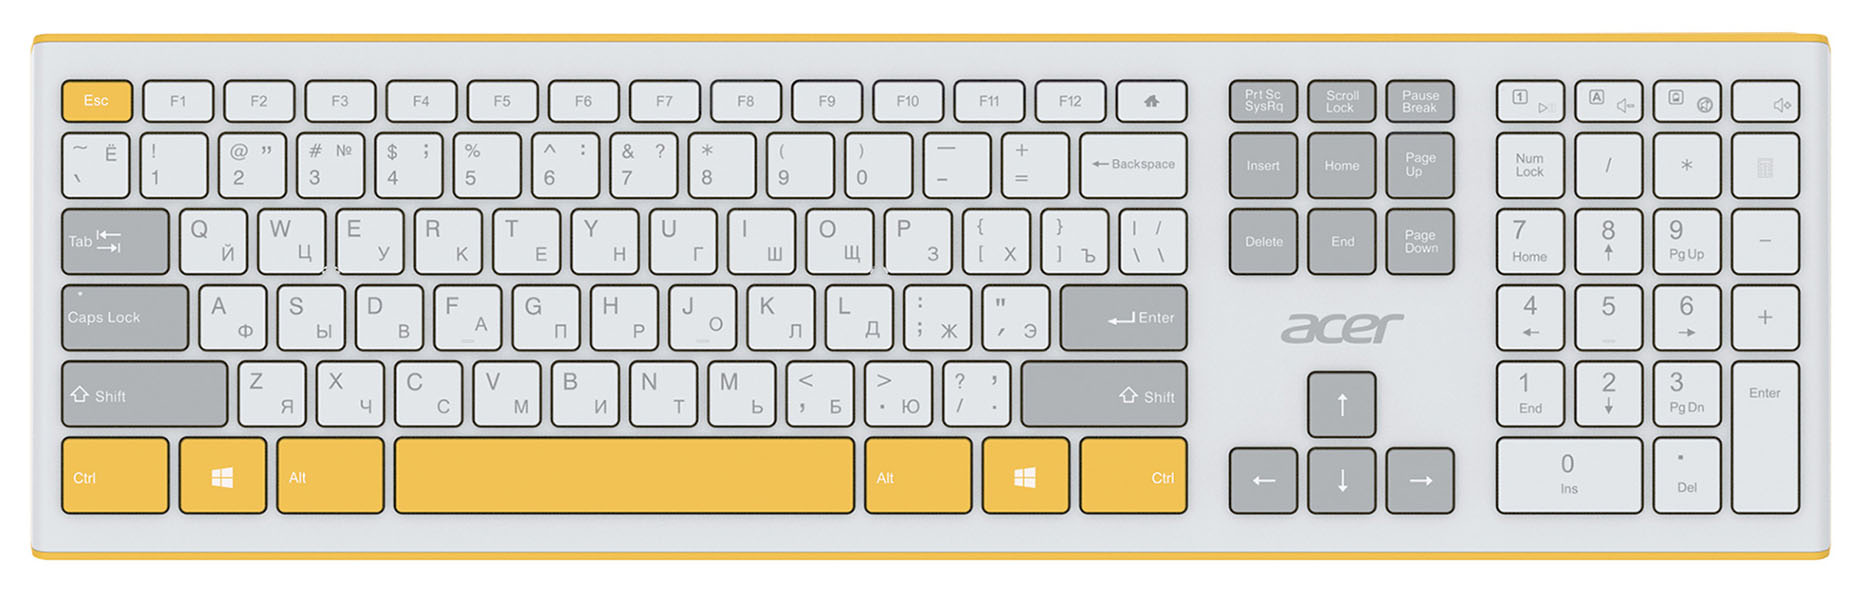 Клавиатура + мышь Acer OCC200, желтый